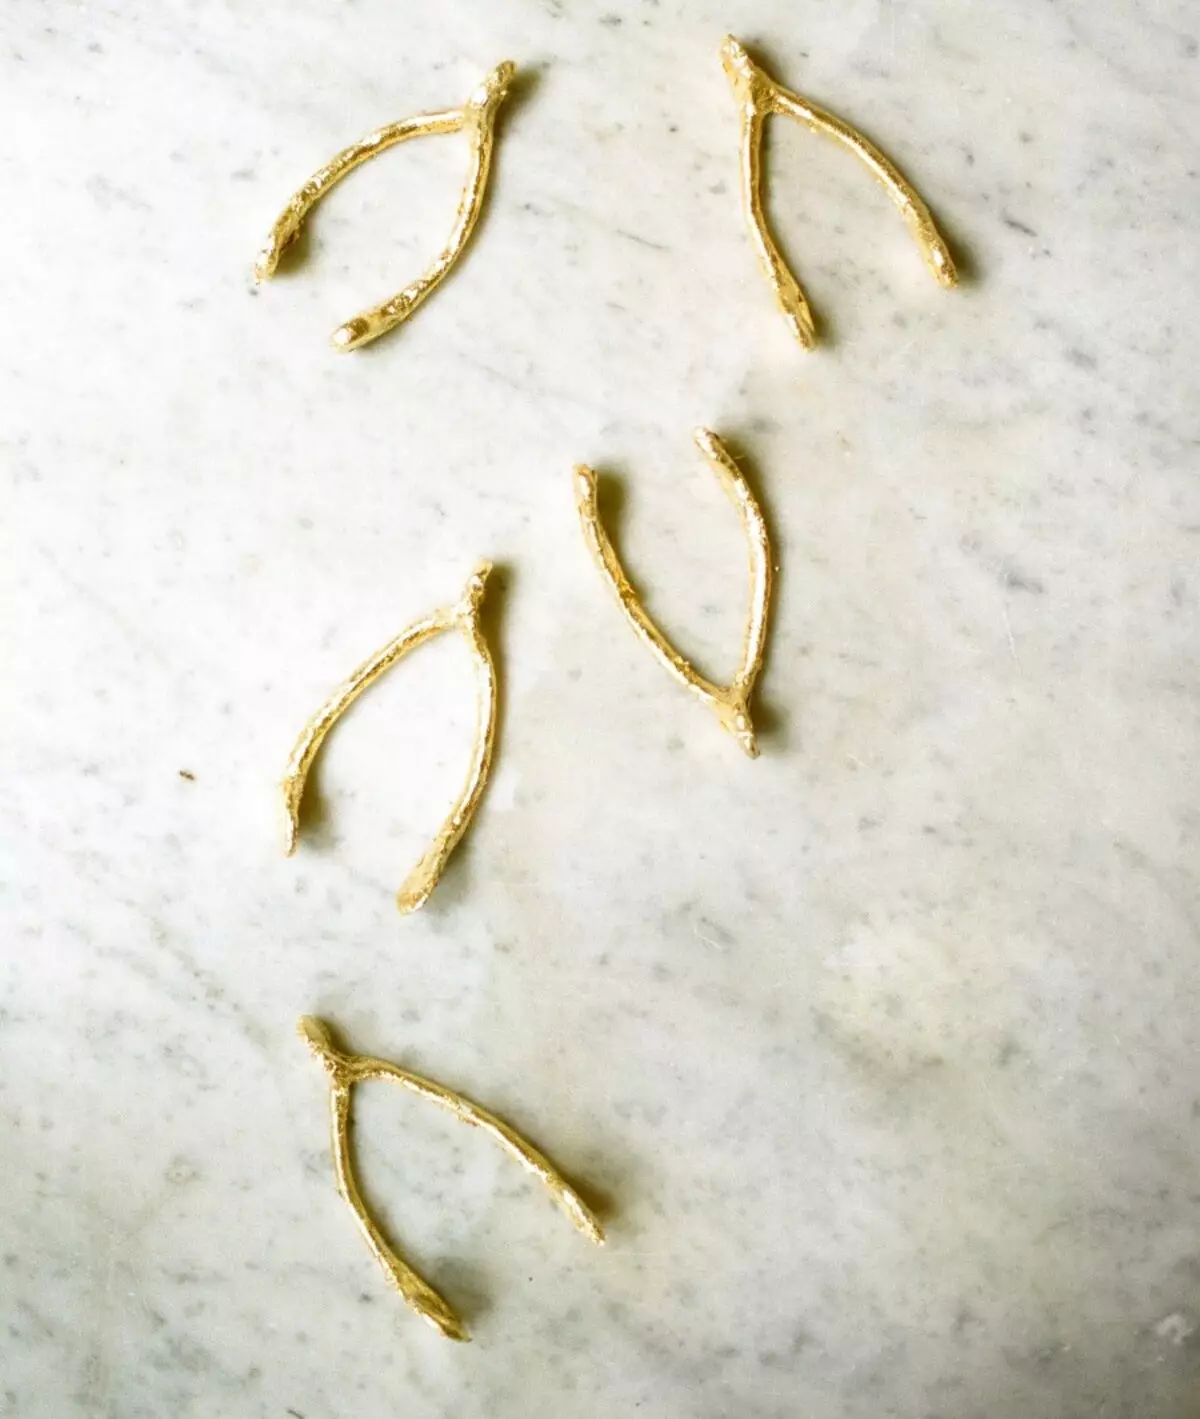 న్యూ ఇయర్ యొక్క పరివారం: ఒక ఫ్యాషన్ స్కాండినేవియన్ శైలిలో పట్టిక సర్వ్ ఎలా